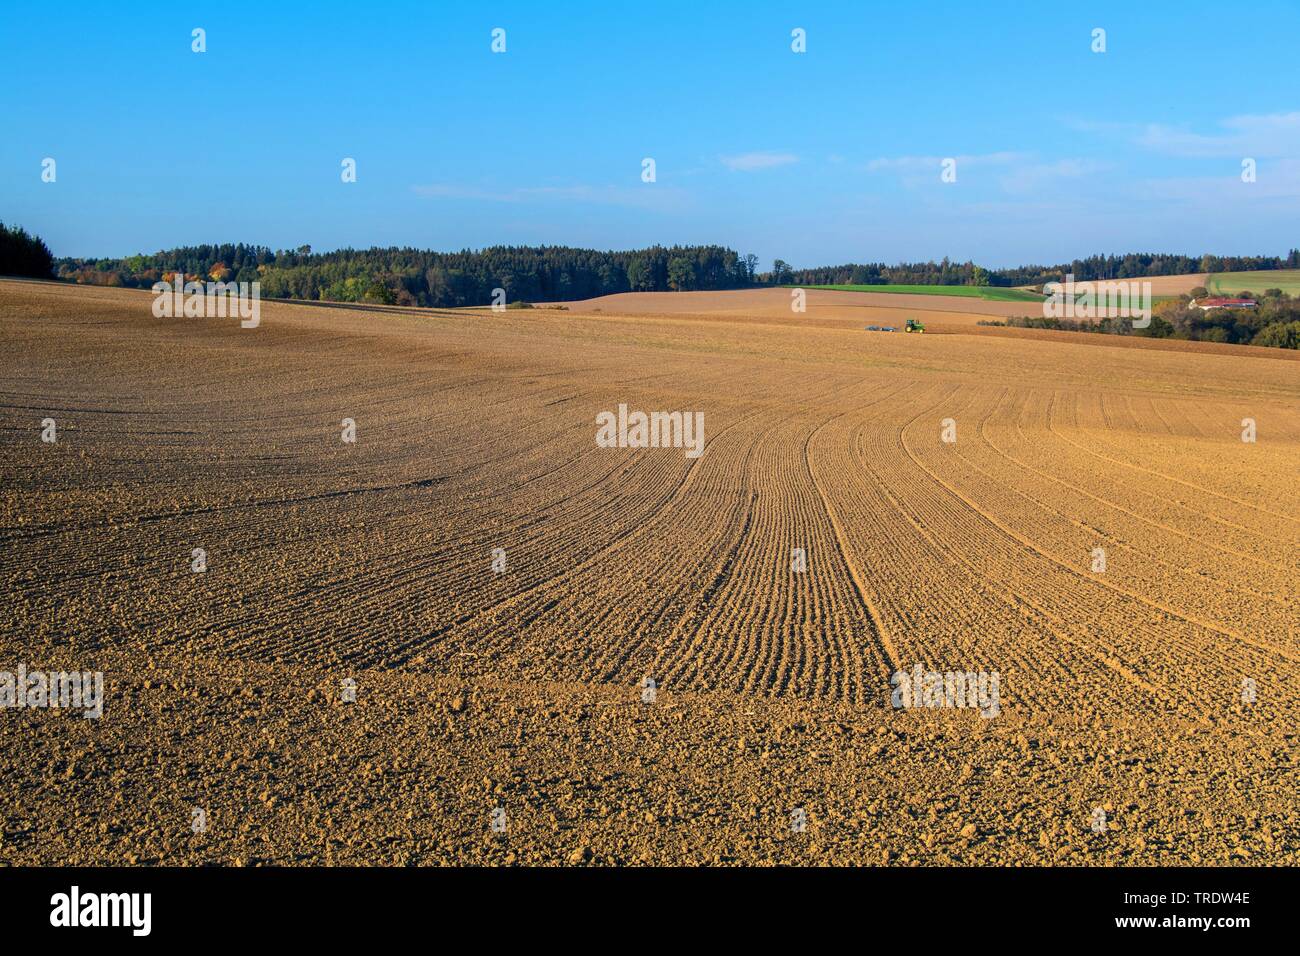 Los surcos del campo, el paisaje desolado, utilizado intensivamente, pérdida de especies, Alemania, Baviera Foto de stock